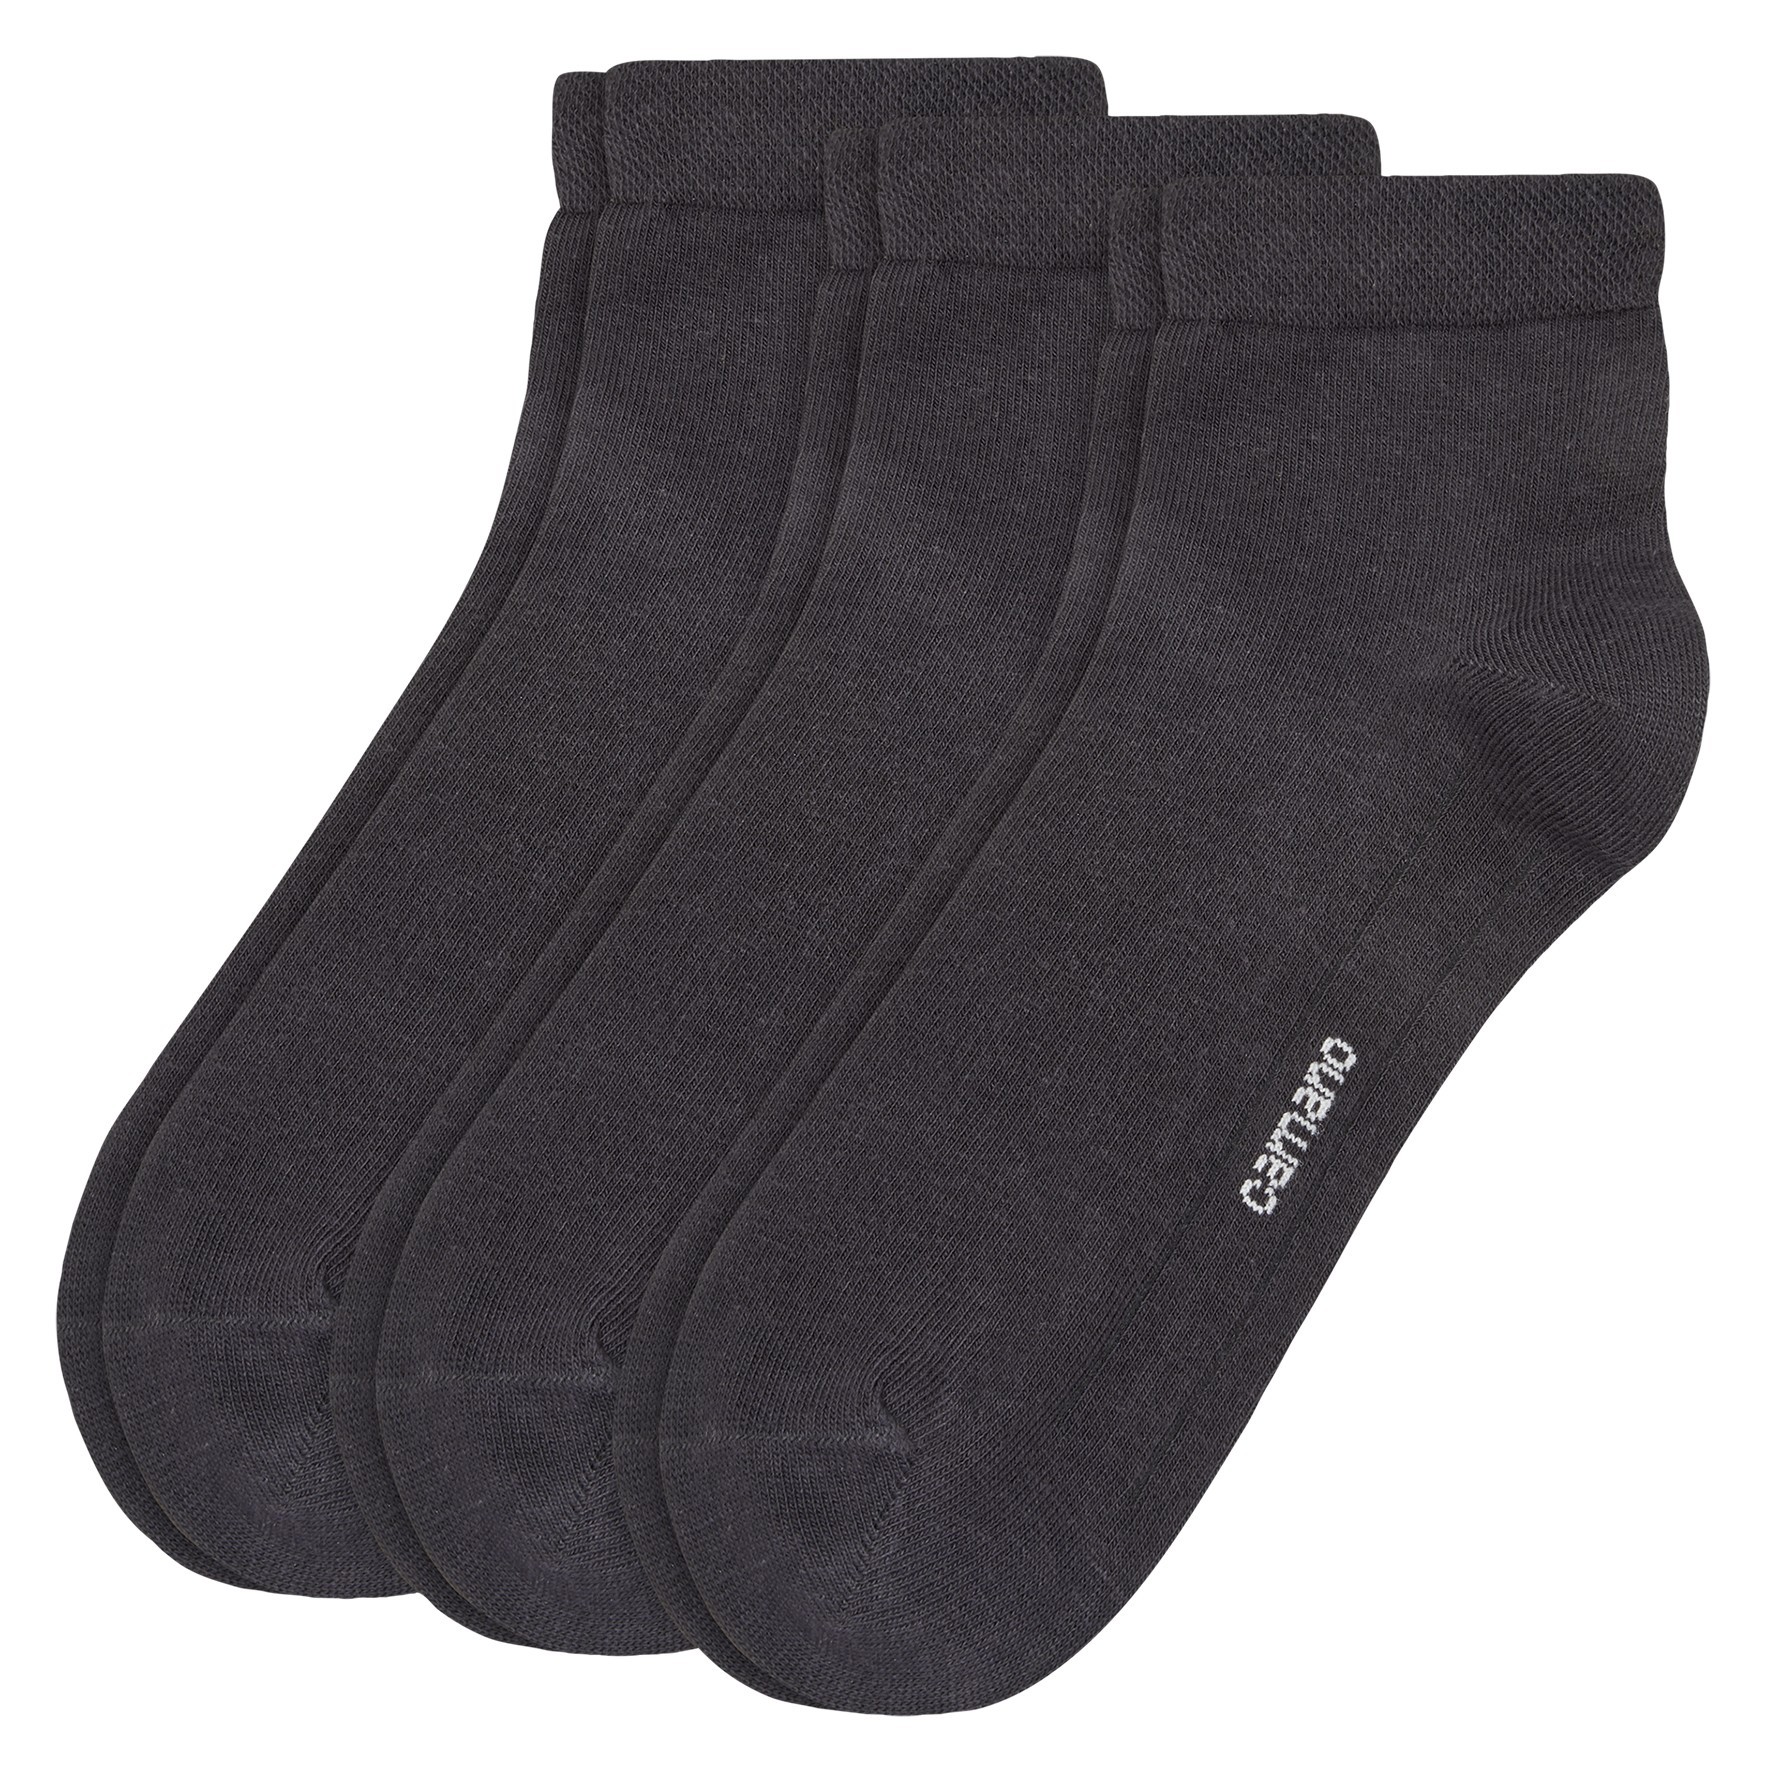 Camano Socken 3er Pack. STADLER Shop Online – TEXTIL 1113023